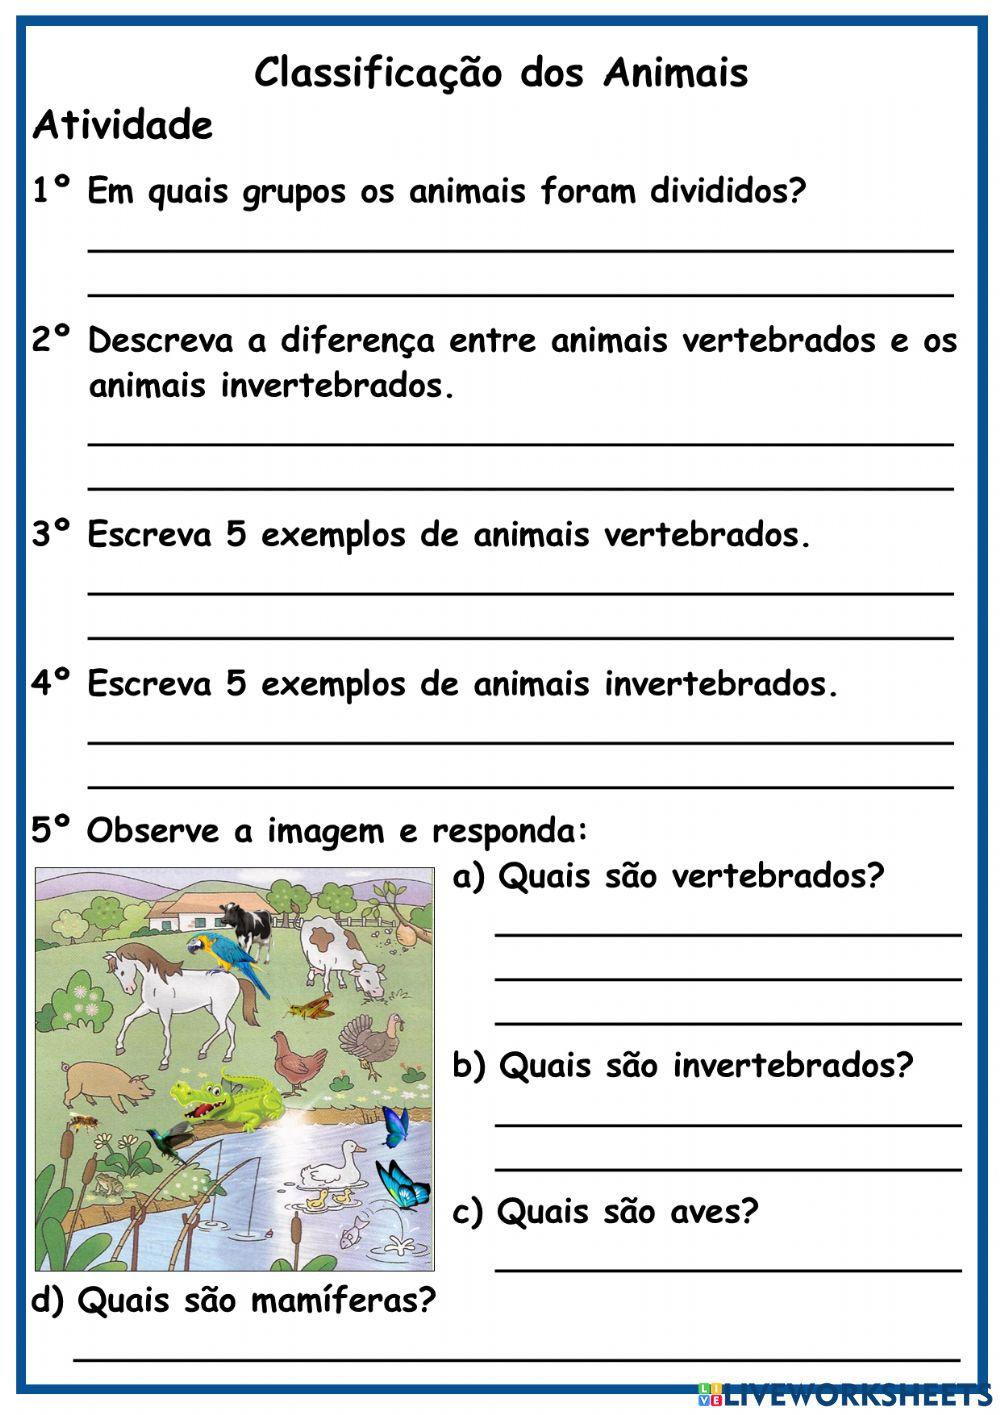 Classificação dos Animais